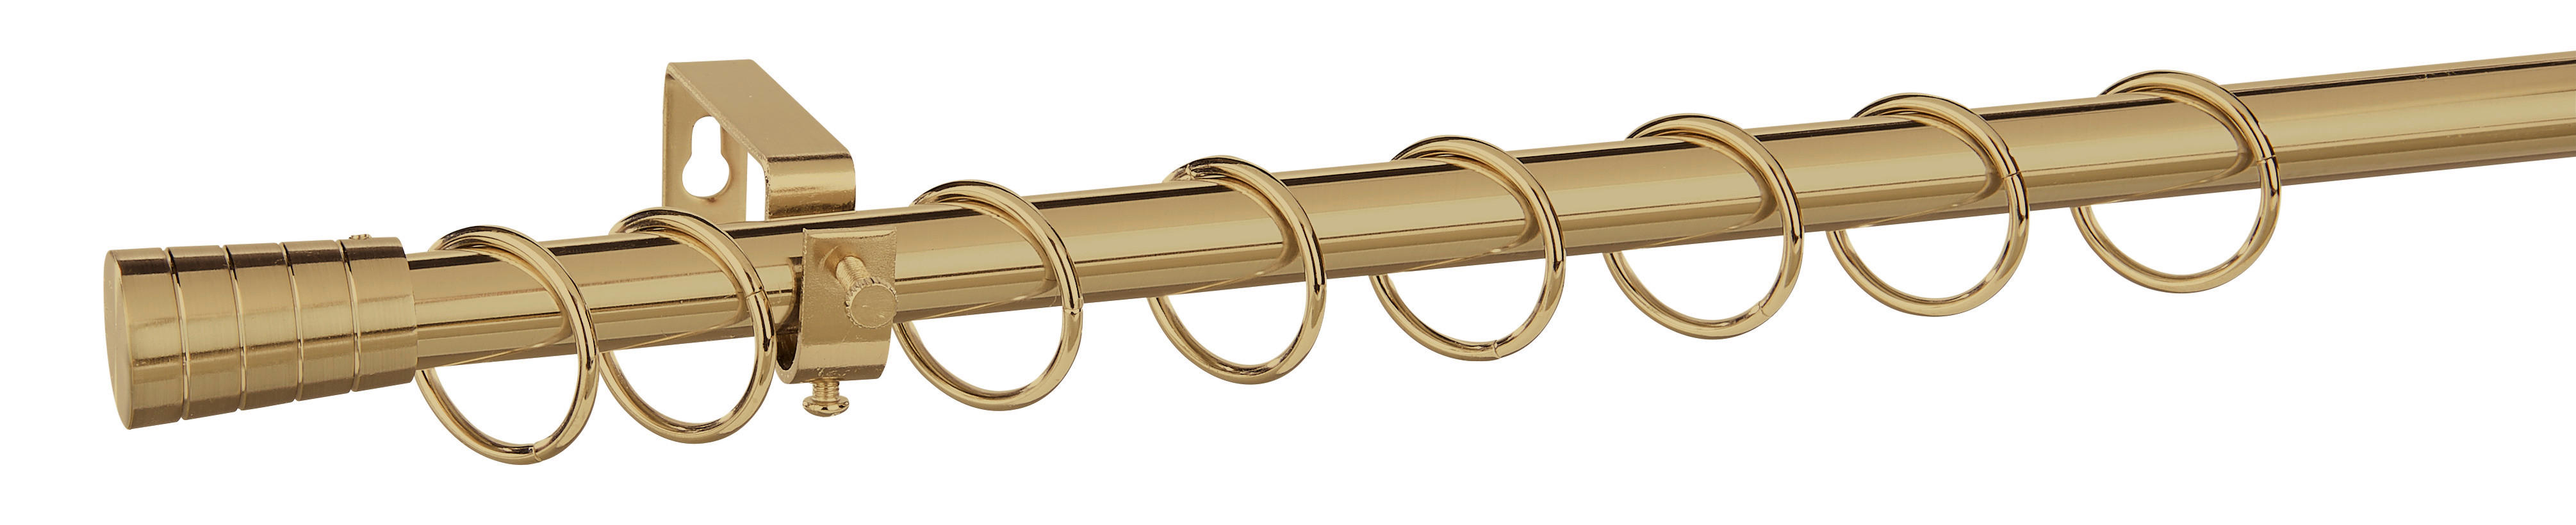 Stilgarnituren Kappe champagner Metall D: ca. 1,9 cm ausziehbar von ca. 130 bis 240 cm 1.0 Läufe